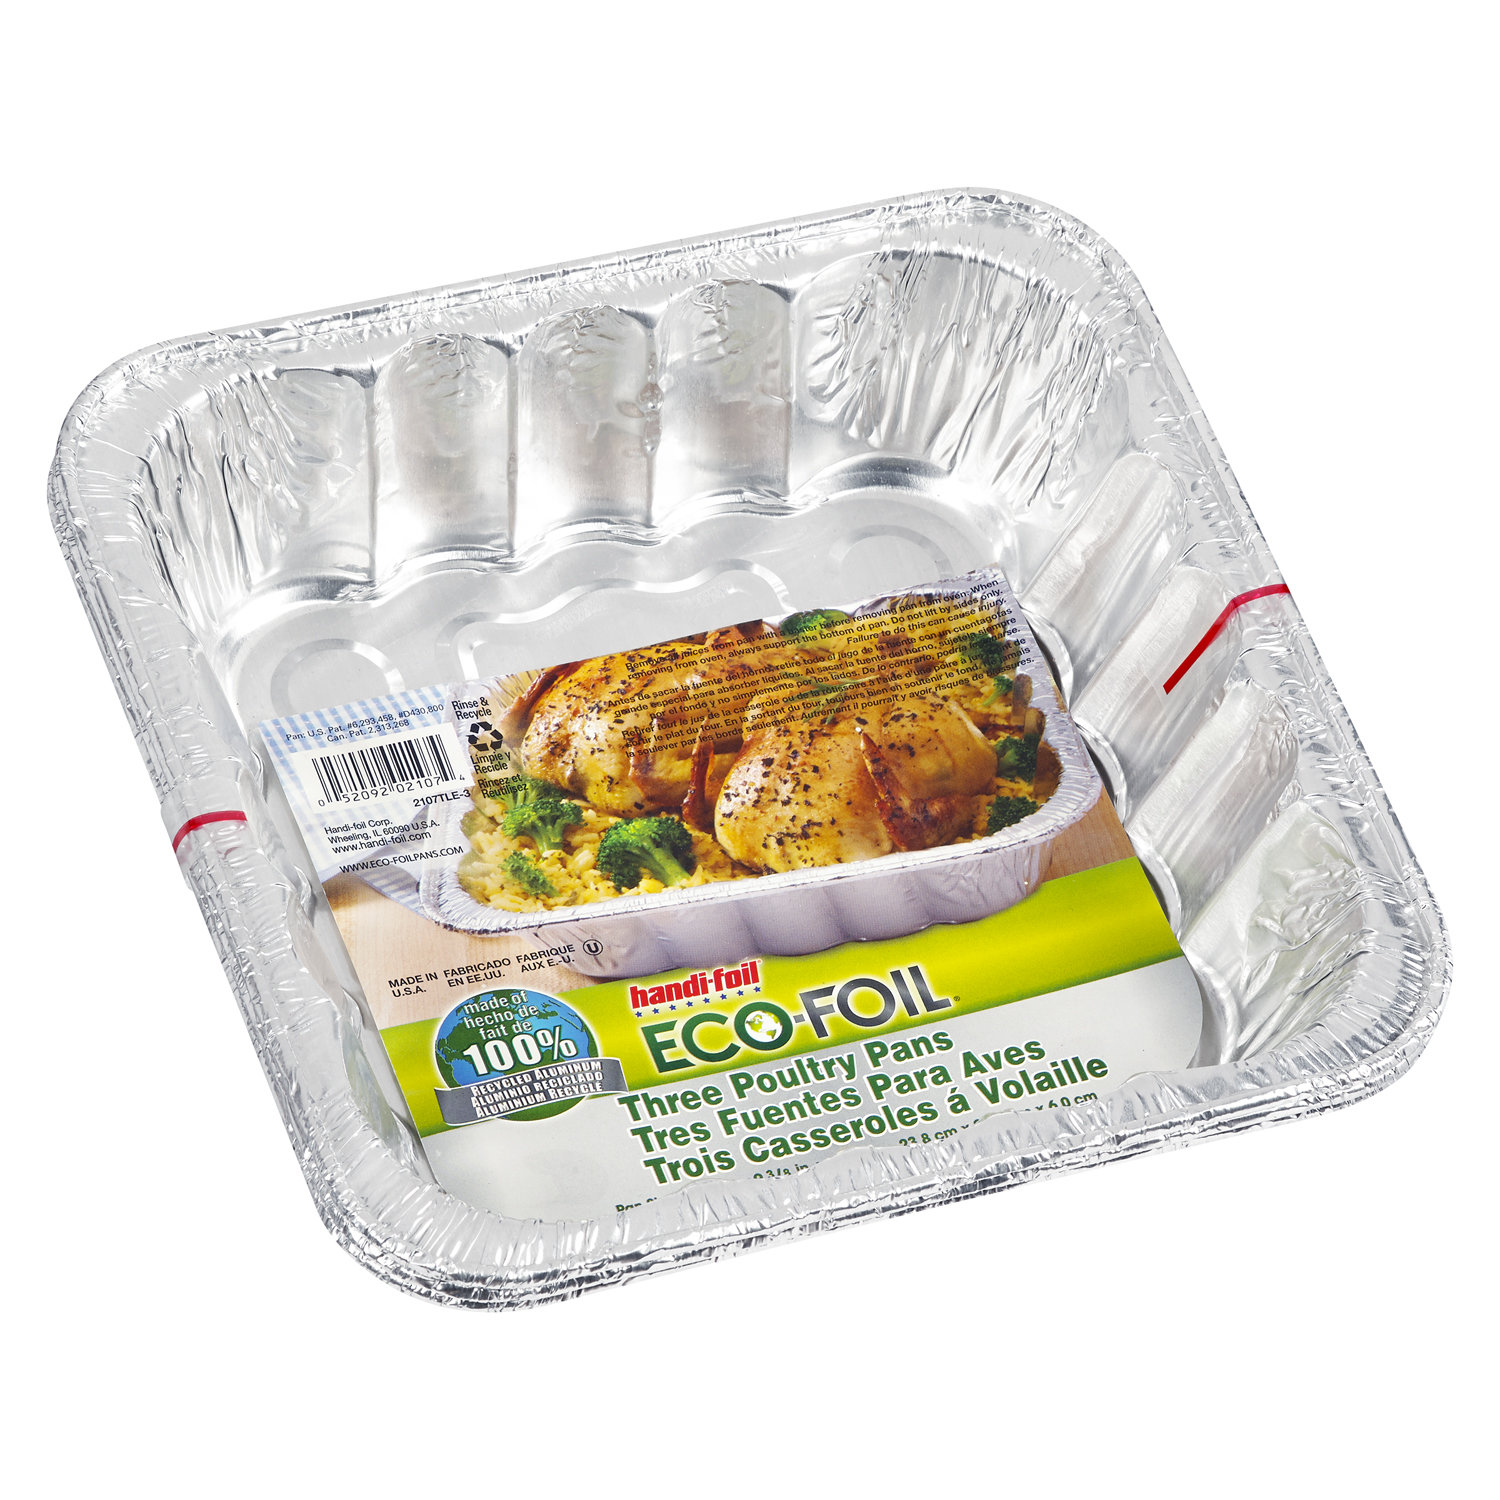 PanSaver® Turkey Oven Bag